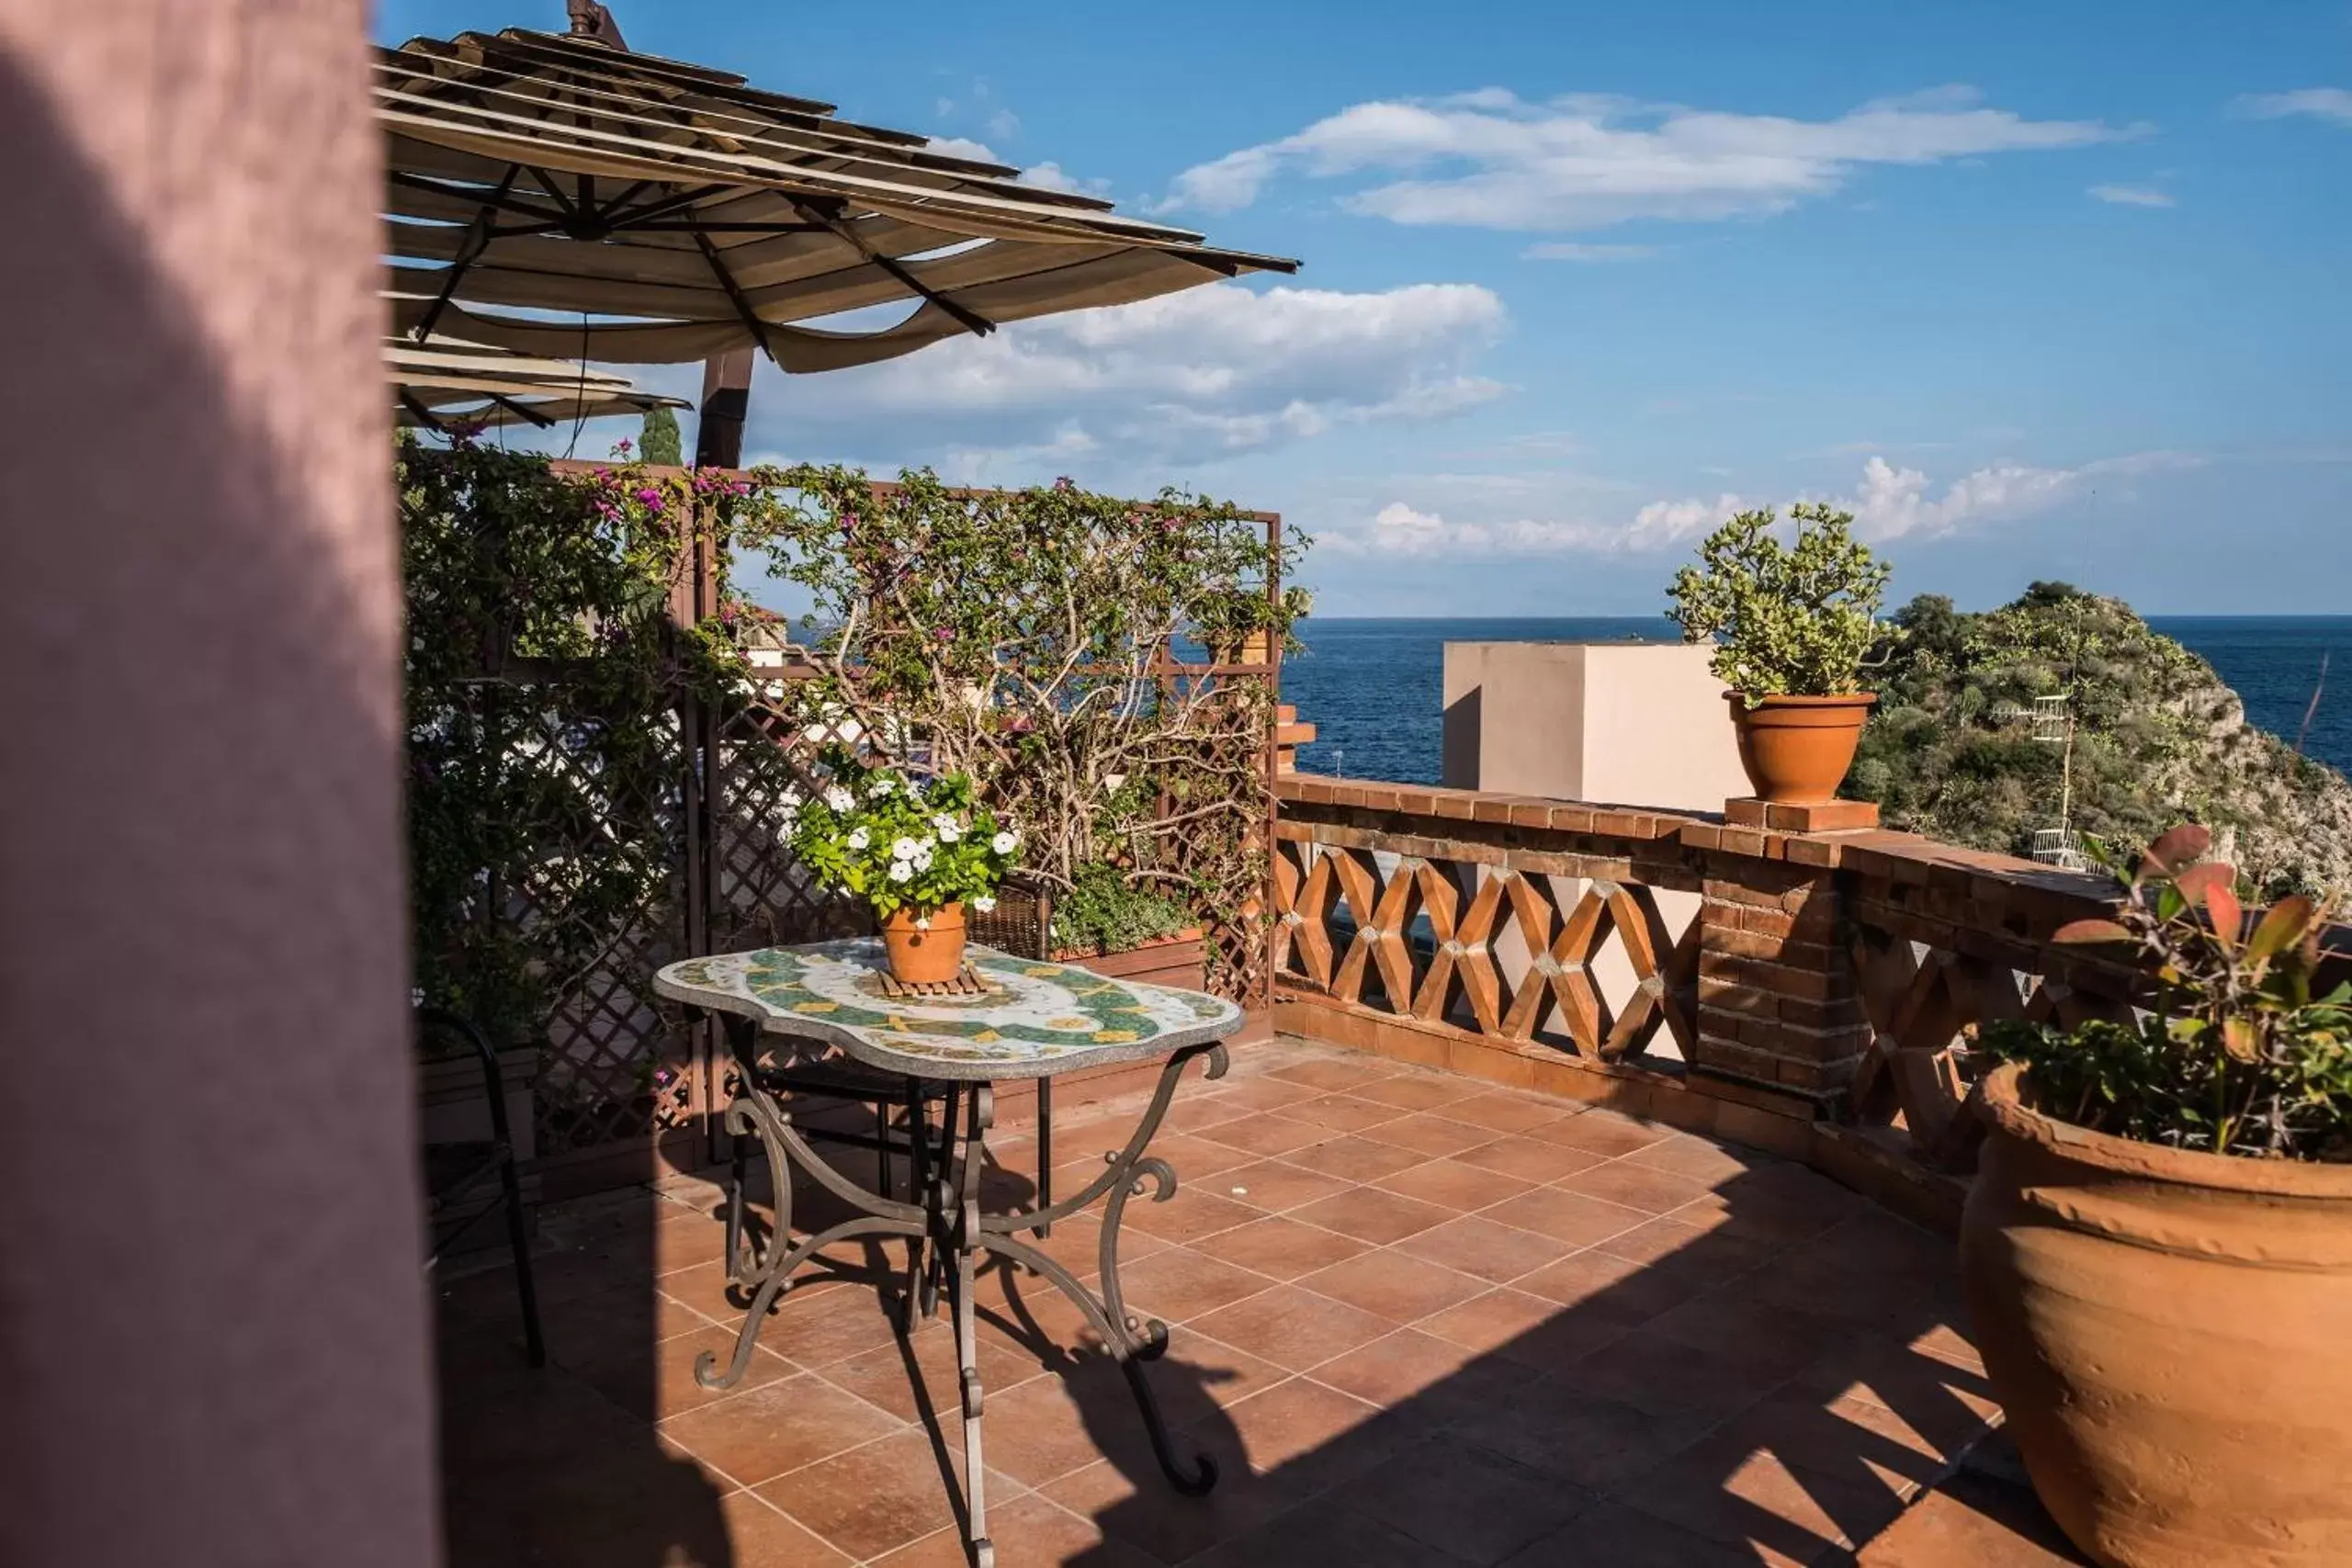 Balcony/Terrace, Patio/Outdoor Area in Hotel Villino Gallodoro